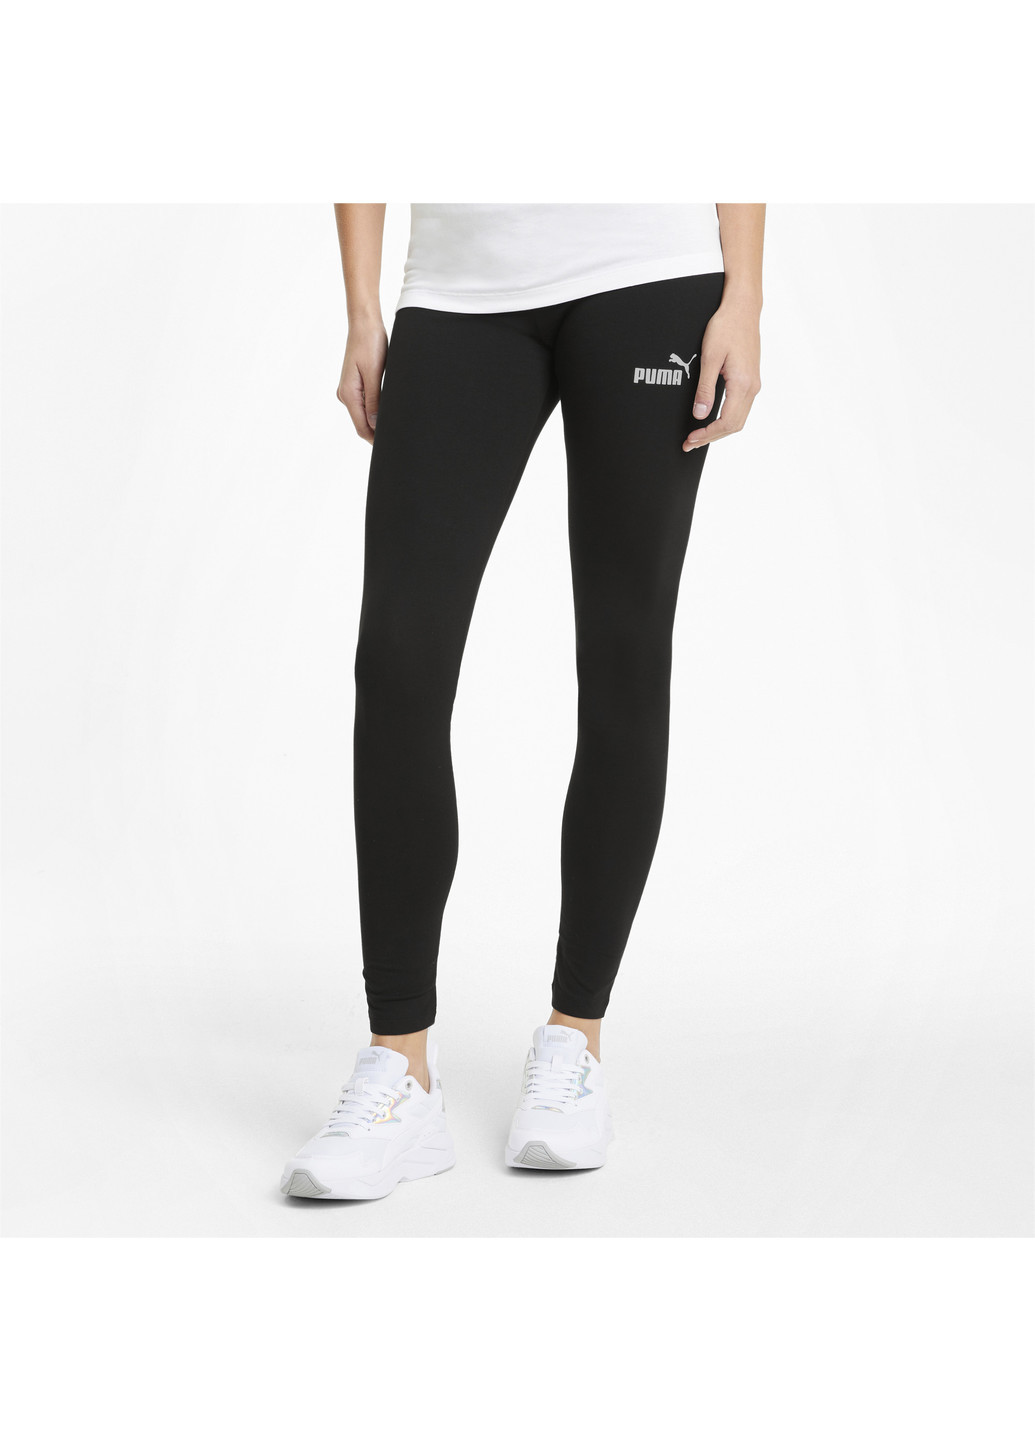 Черные демисезонные легинсы essentials women's leggings Puma